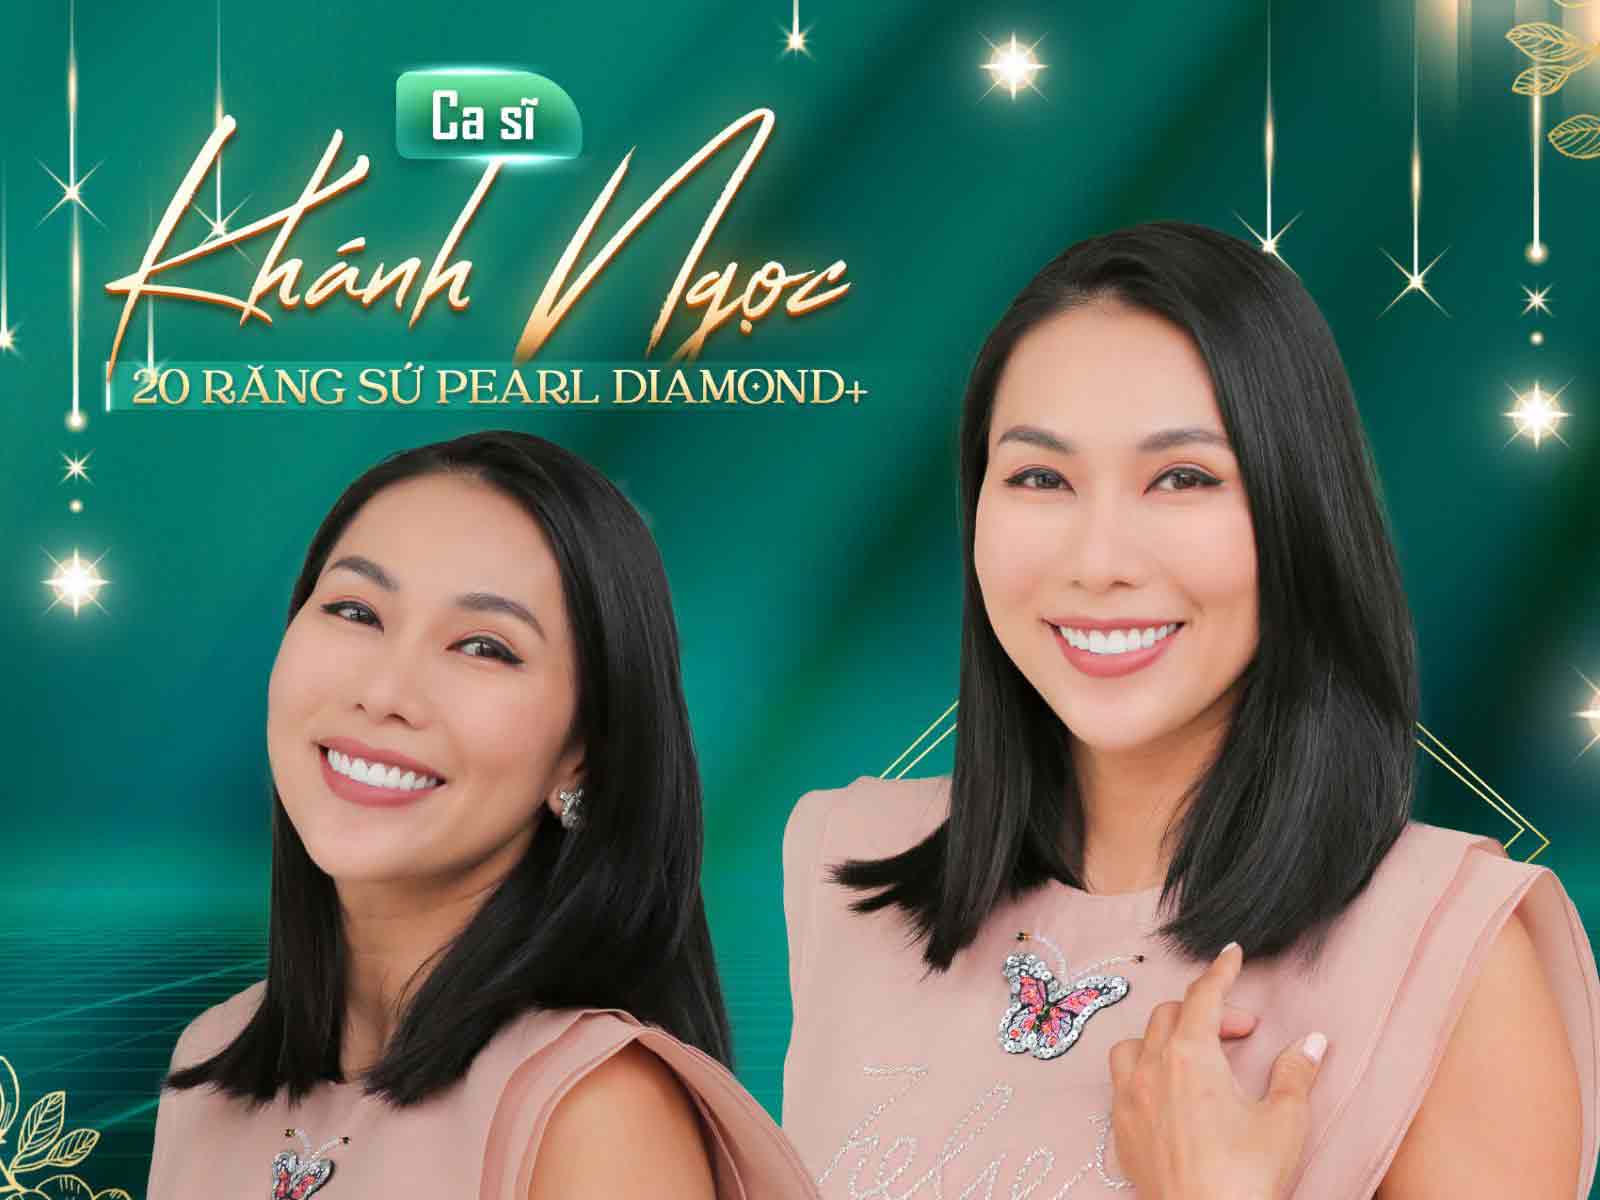 ca sĩ Khánh Ngọc làm răng sứ tại nha khoa casino online uy tín



